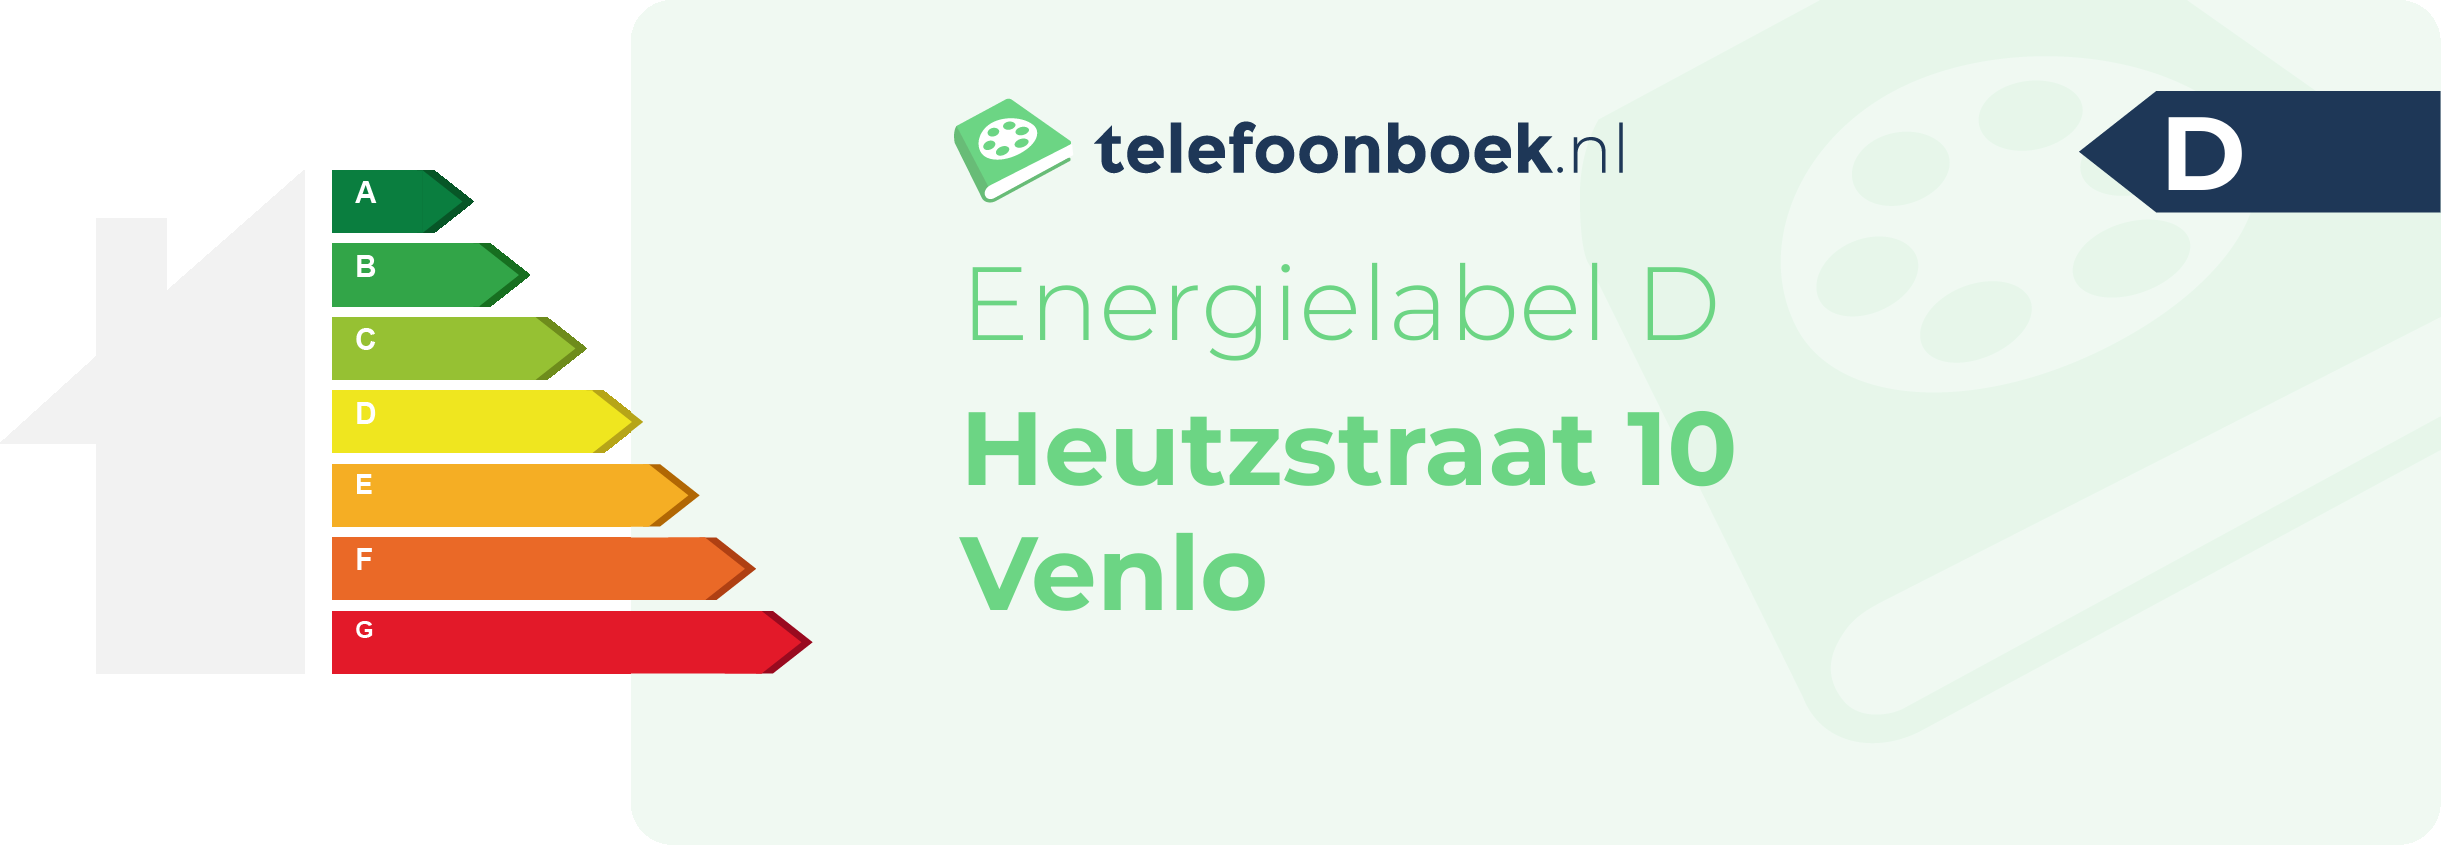 Energielabel Heutzstraat 10 Venlo